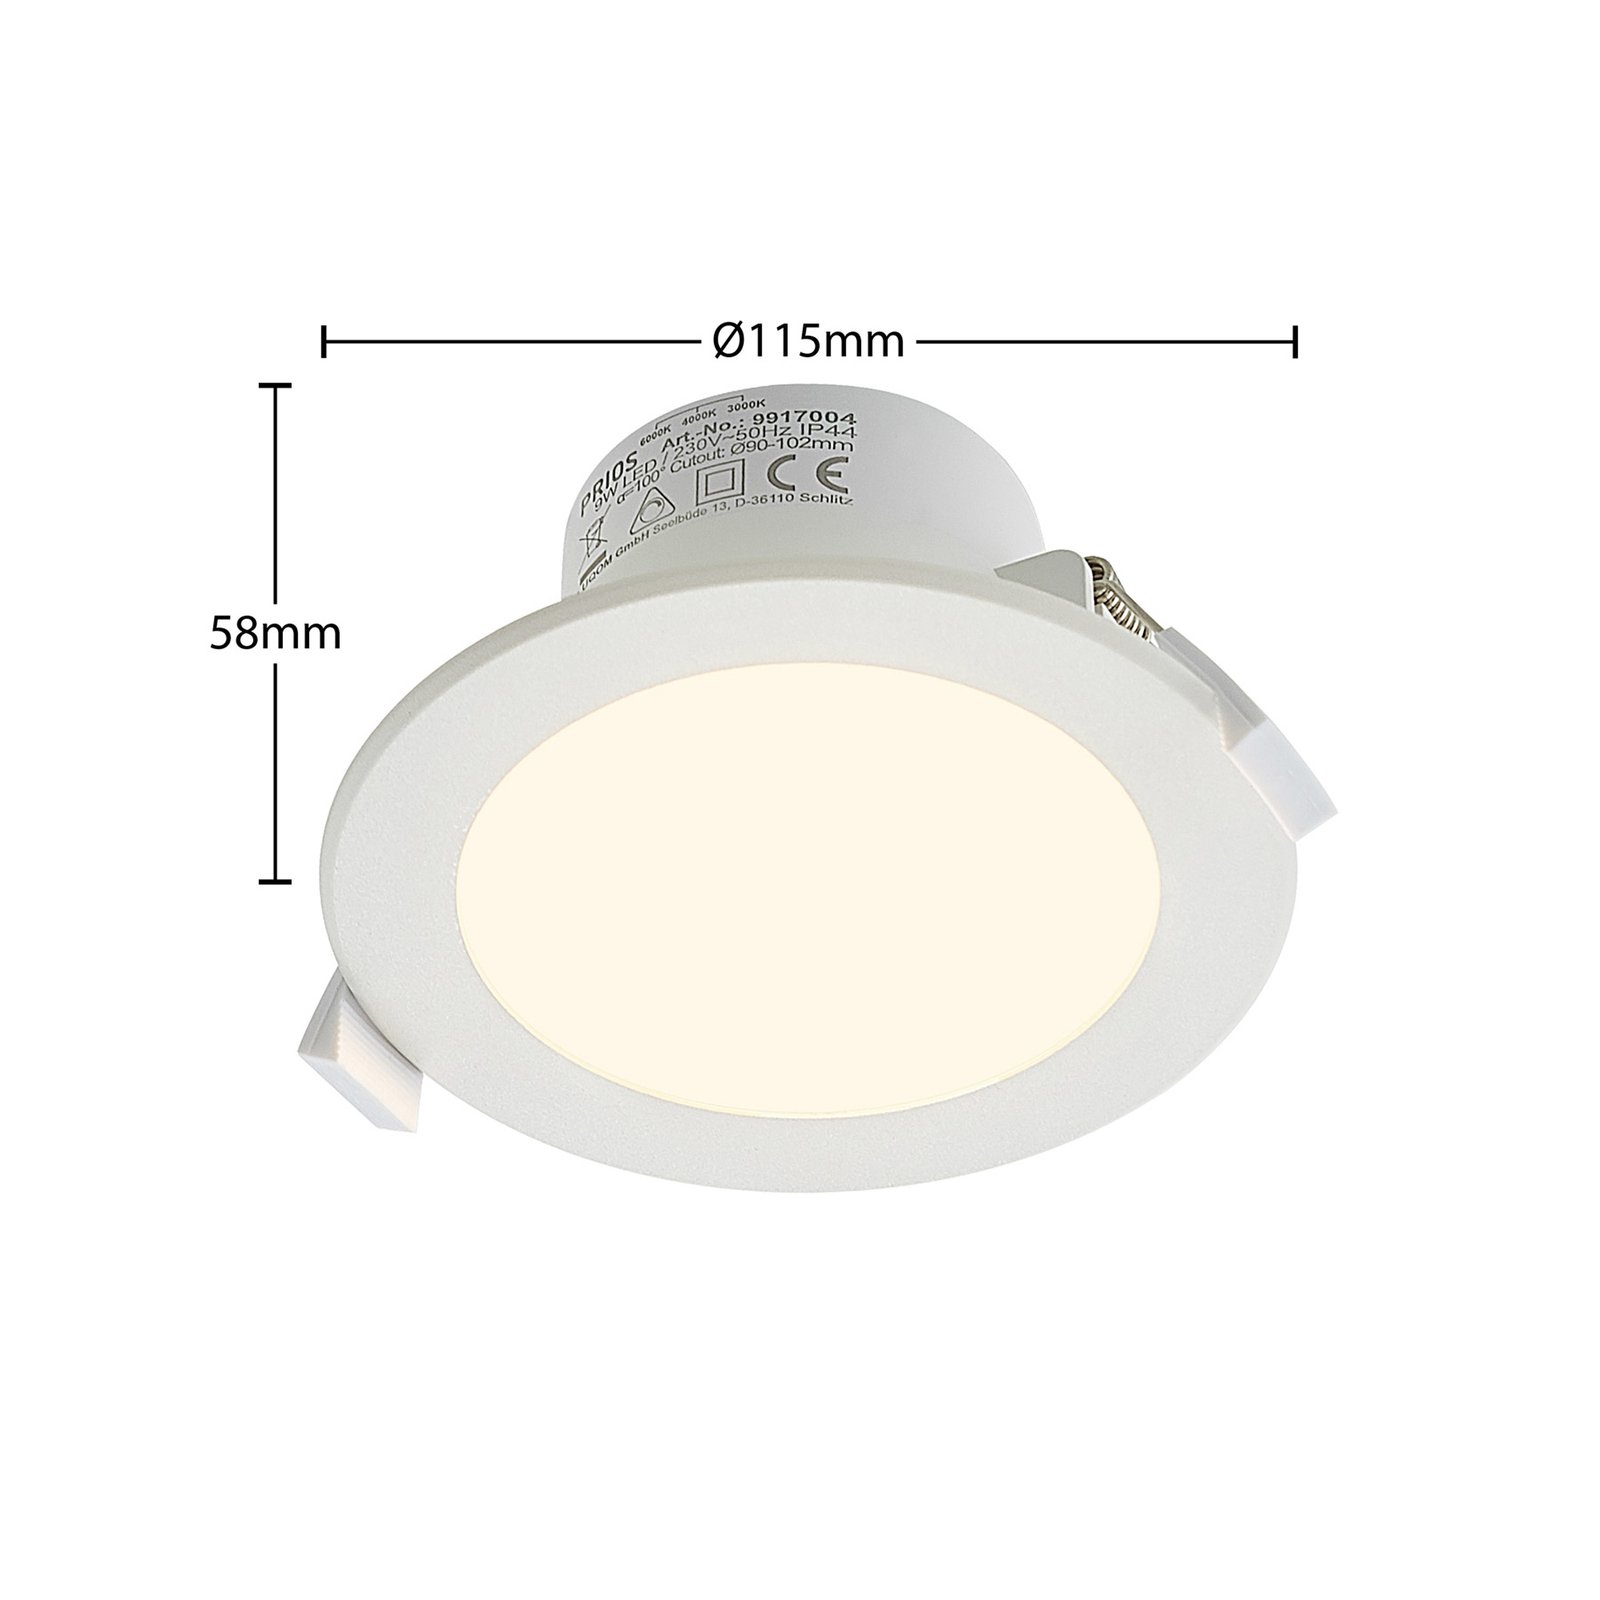 Prios LED süllyesztett spotlámpa Rida, 11,5 cm, 9 W, CCT, dimmelhető